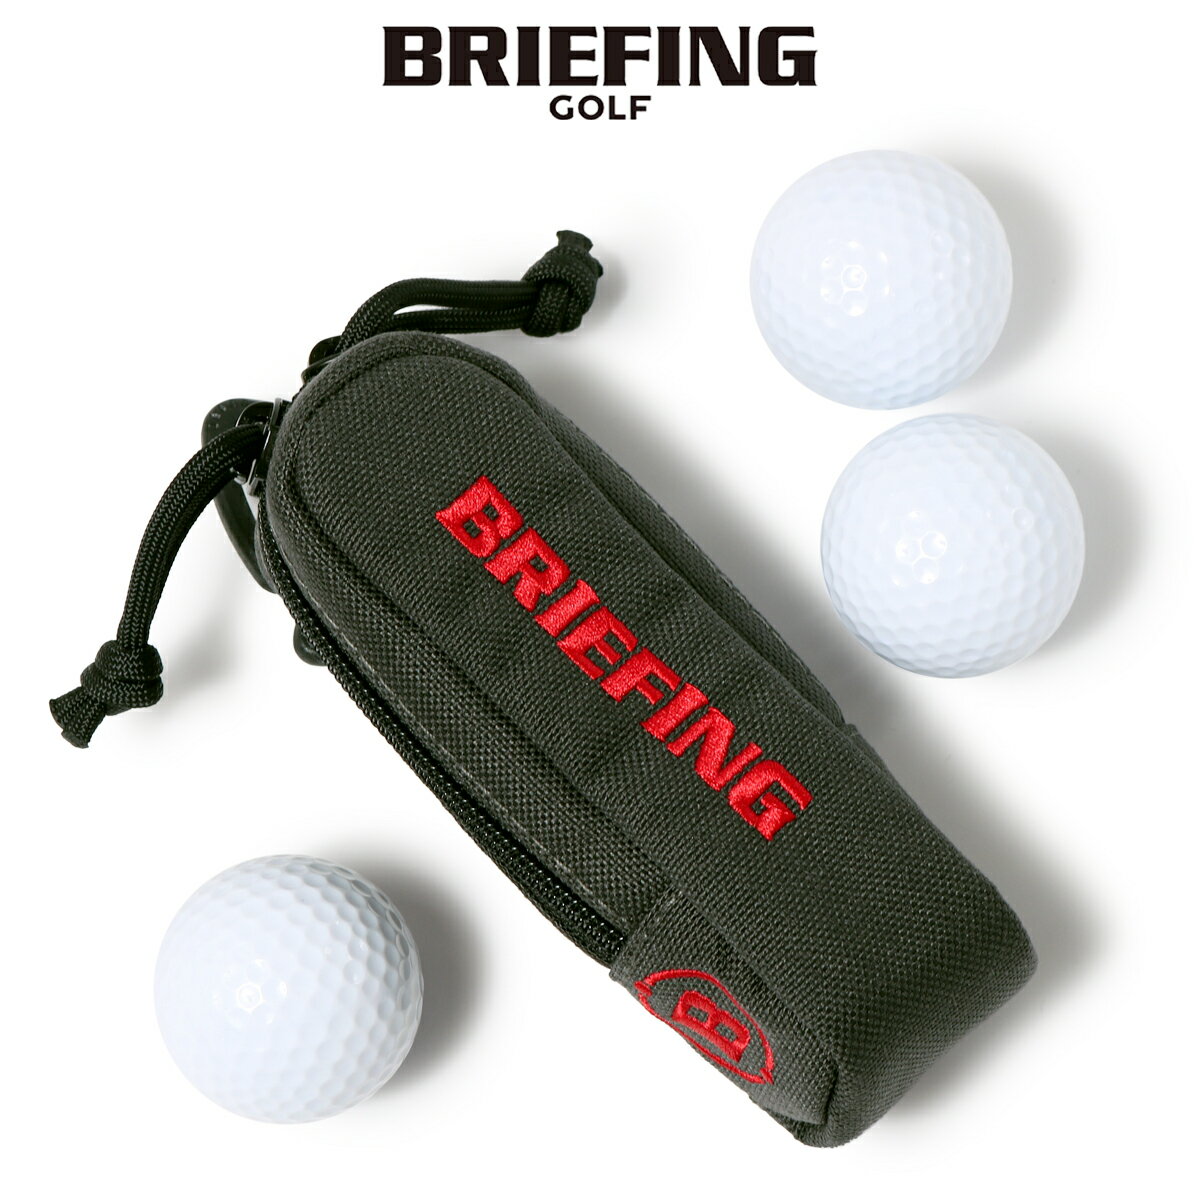 ブリーフィング ゴルフ ボールポーチ VORTEX R CANVAS SERIES メンズBRG223G60 BRIEFING GOLF│ボールケース 3個収納[即日発送]